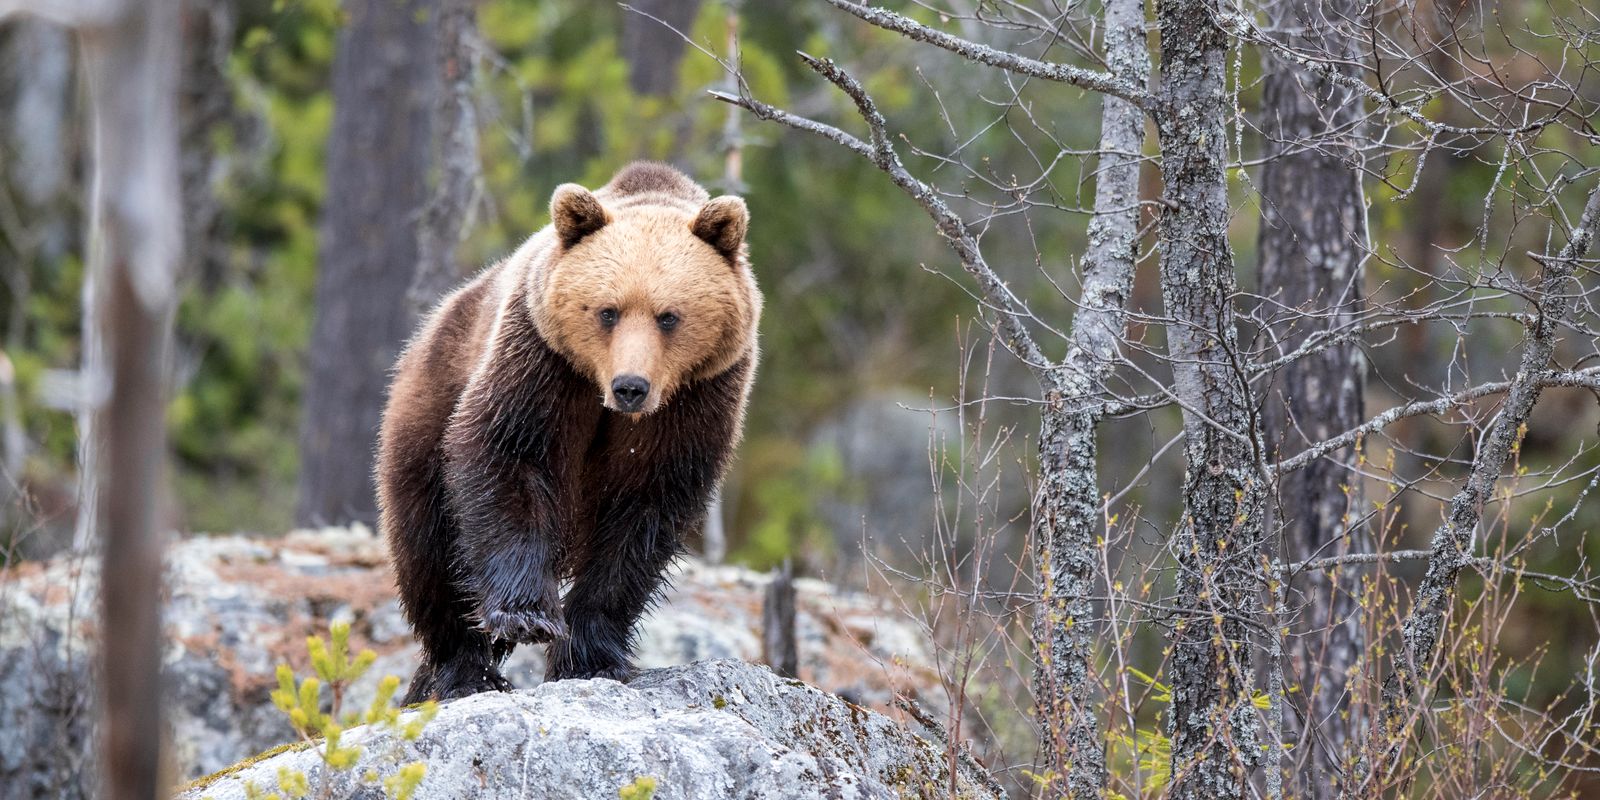 expertens råd om nyvakna björnar: ”prata lugnt”